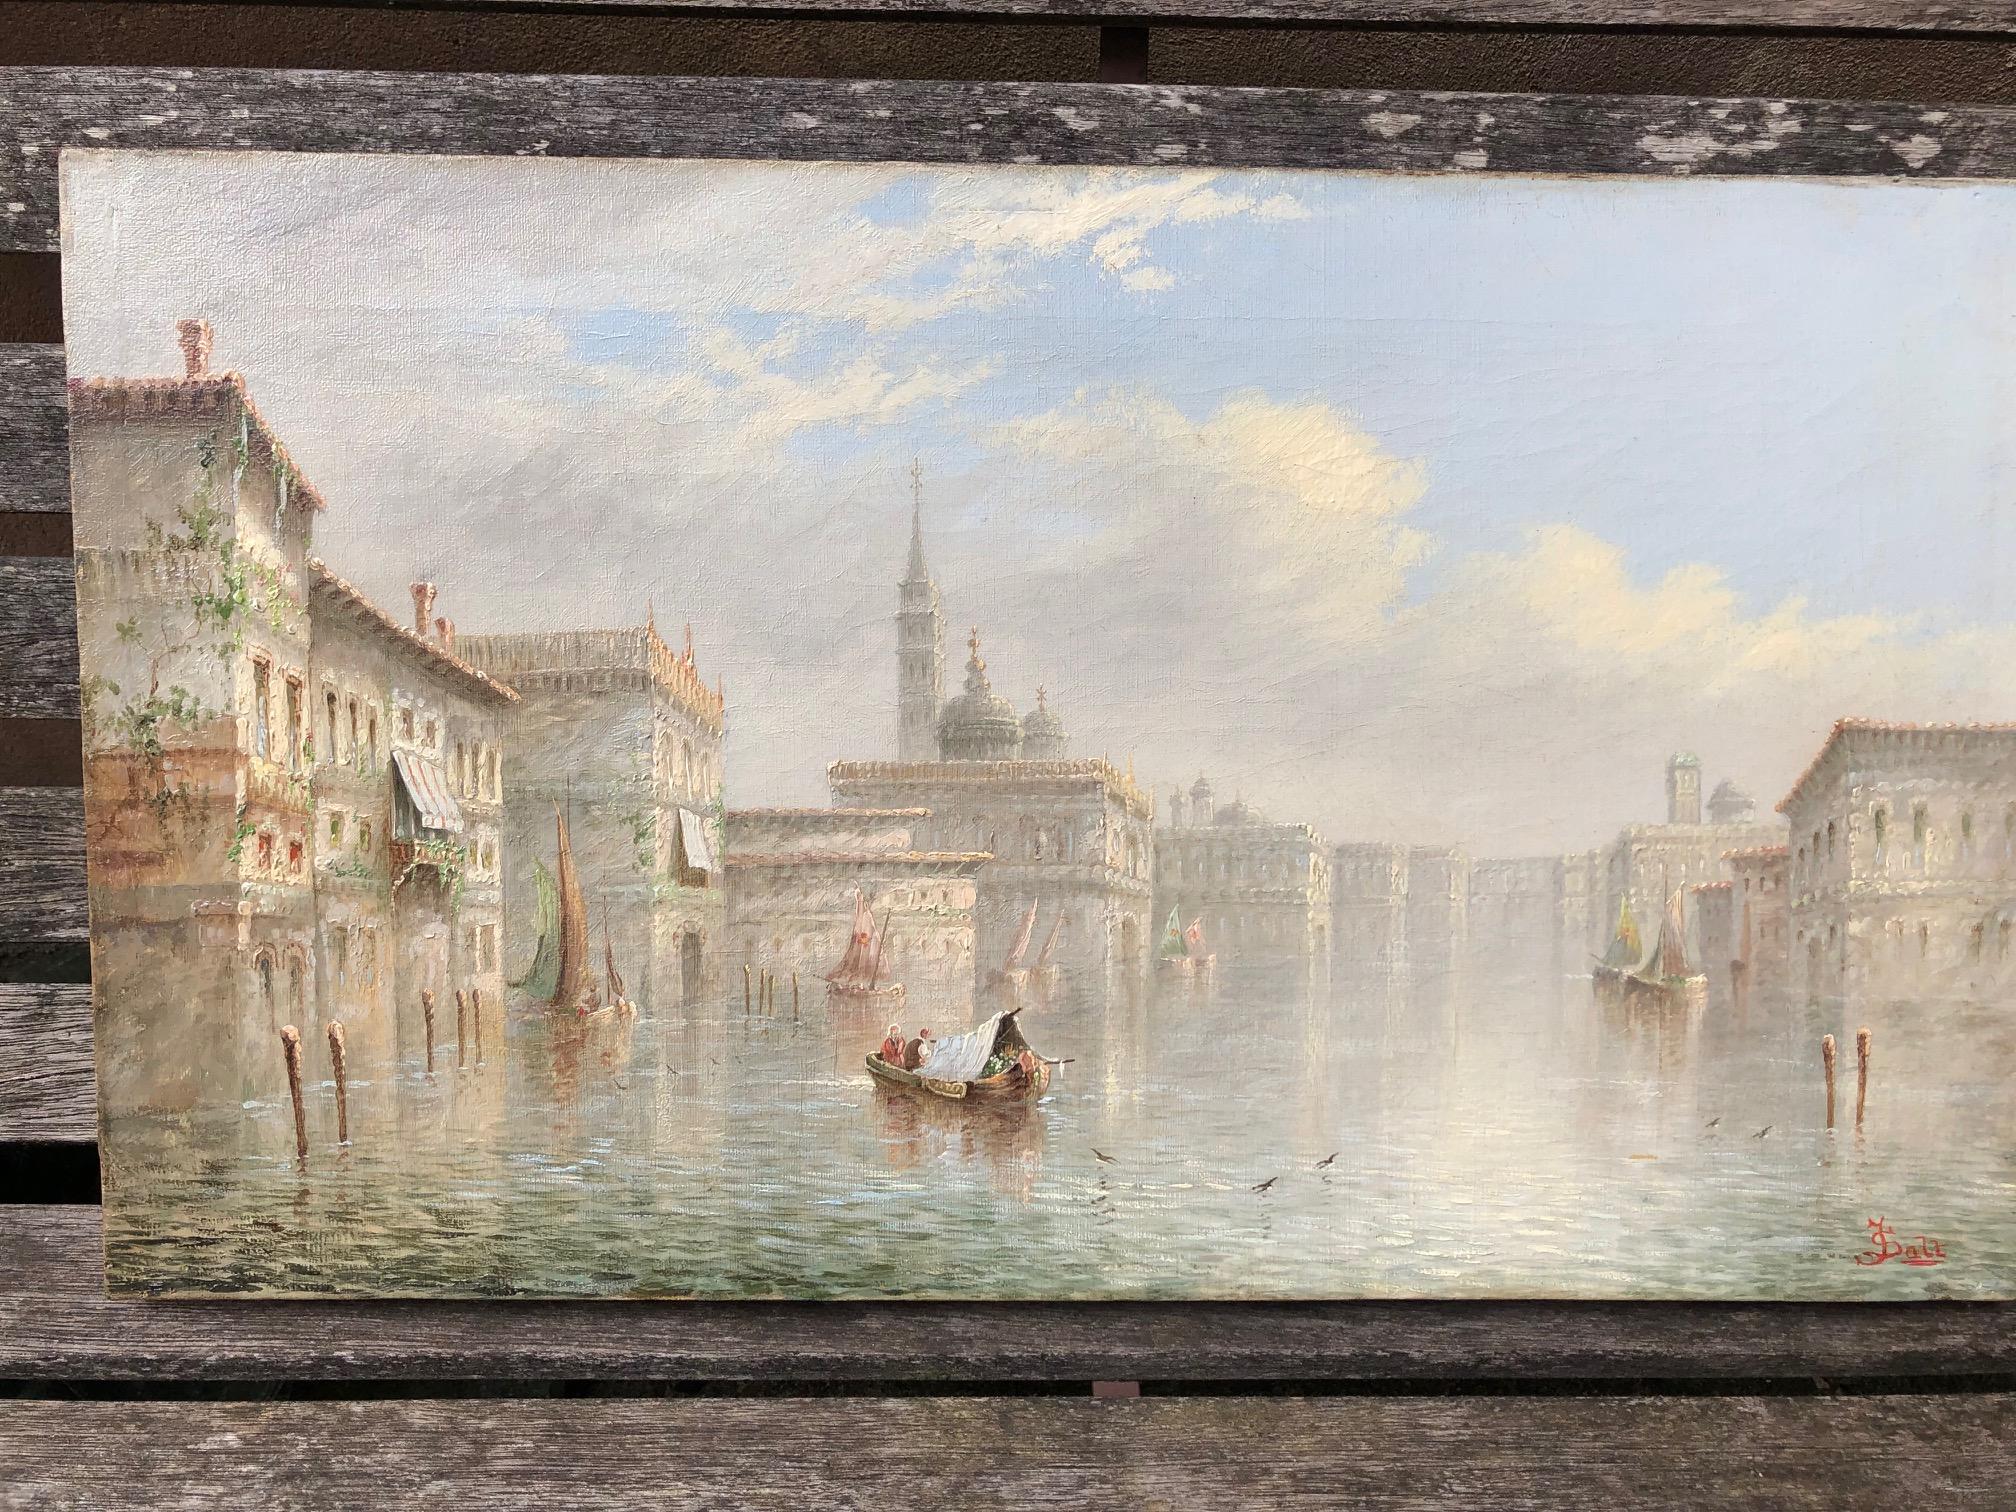 "The Grand Canal, Venice - Venetian Cappriccio" - Art by James Salt